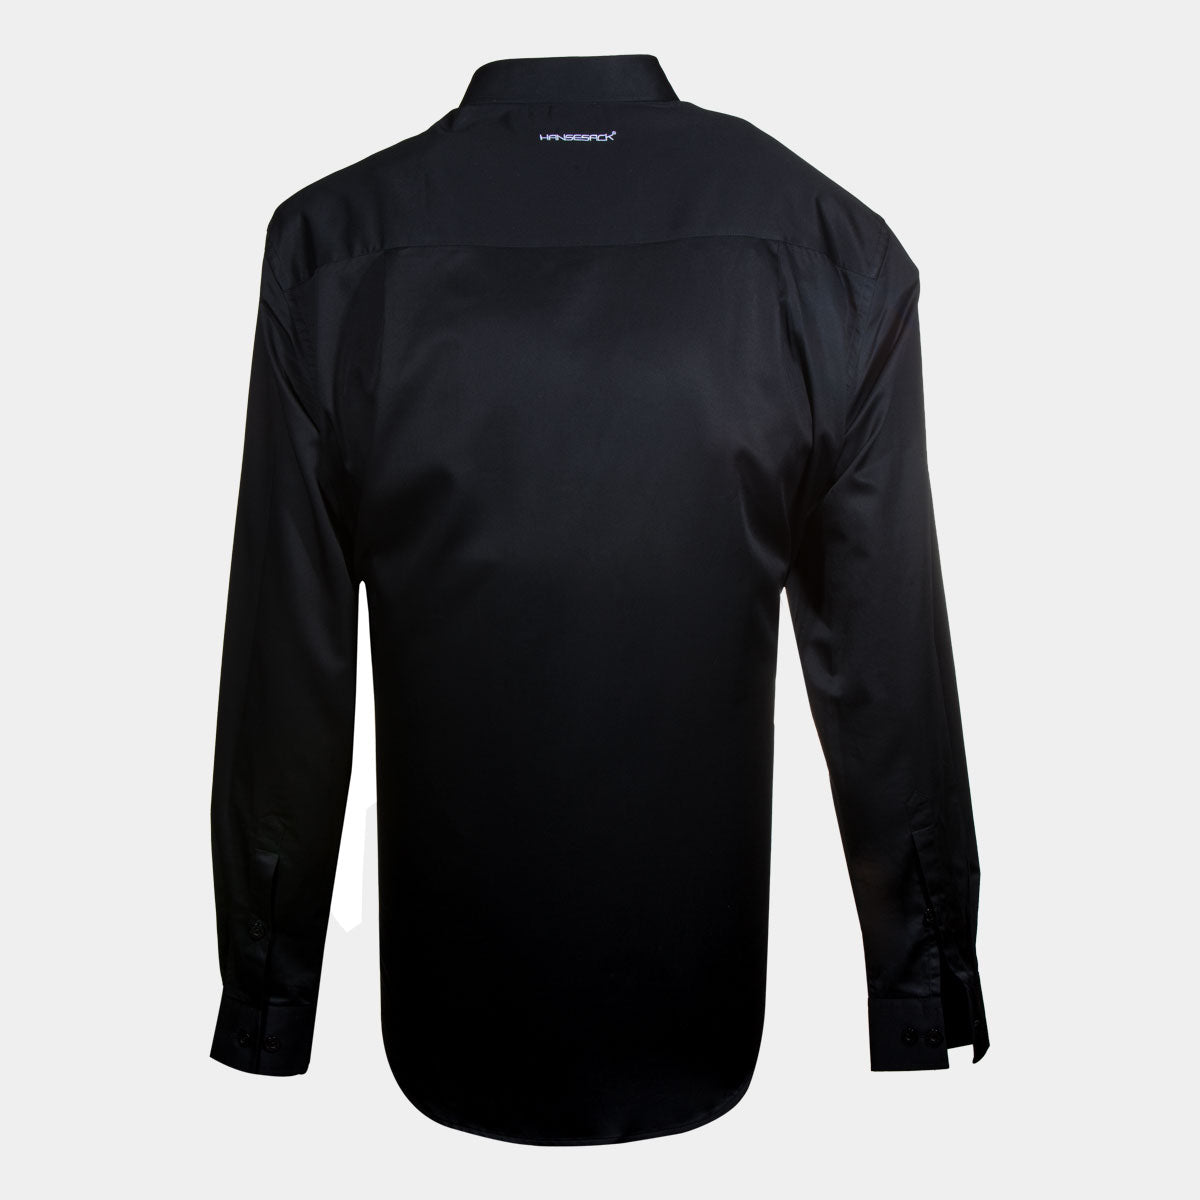 Hansesack Produktbild schwarzes Business-Hemd mit Brusttasche seidig glänzend von hinten